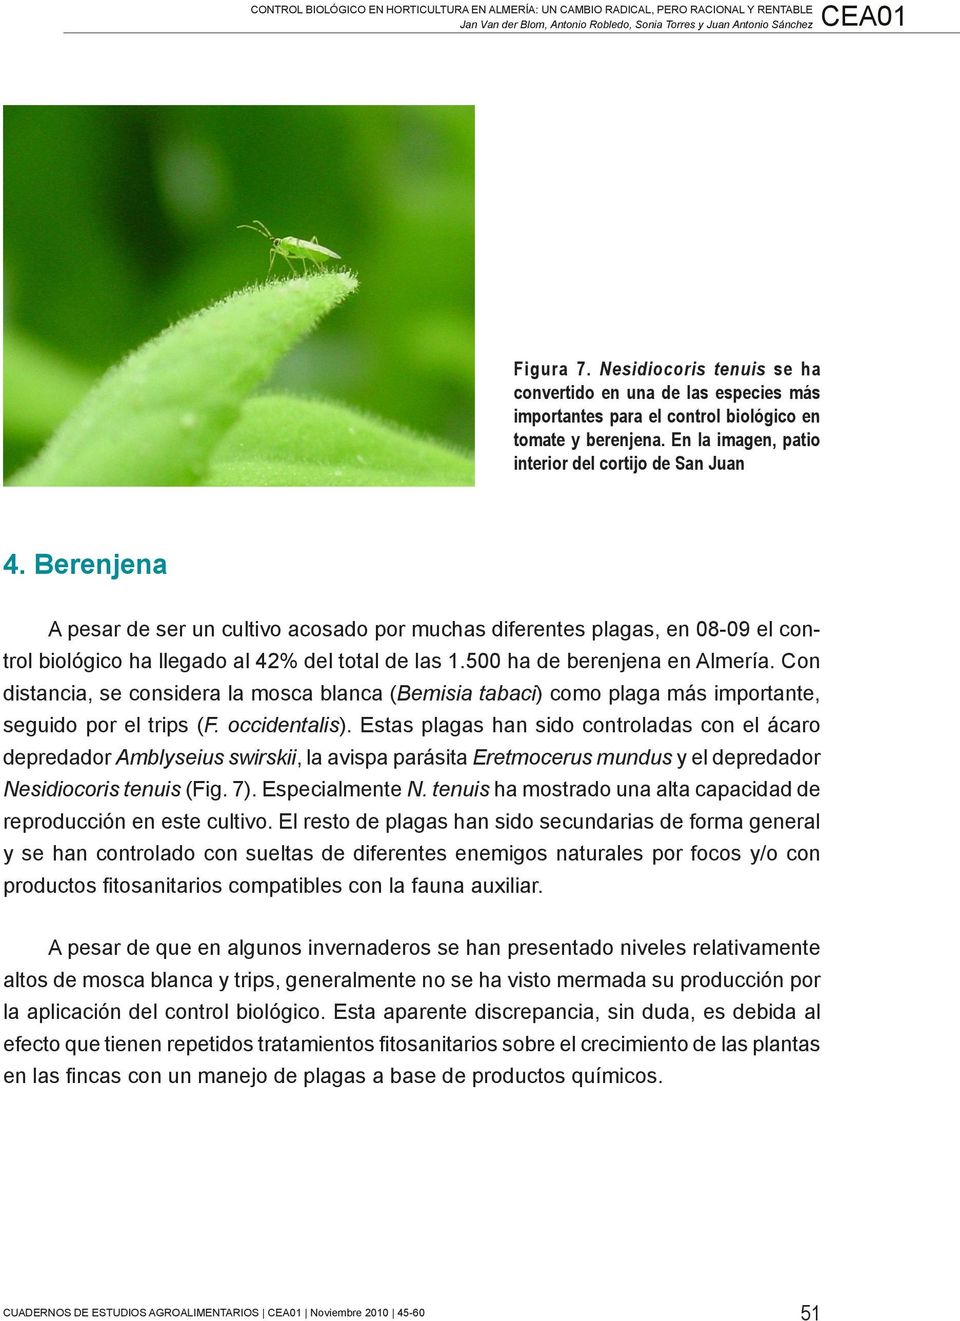 Berenjena A pesar de ser un cultivo acosado por muchas diferentes plagas, en 08-09 el control biológico ha llegado al 42% del total de las 1.500 ha de berenjena en Almería.